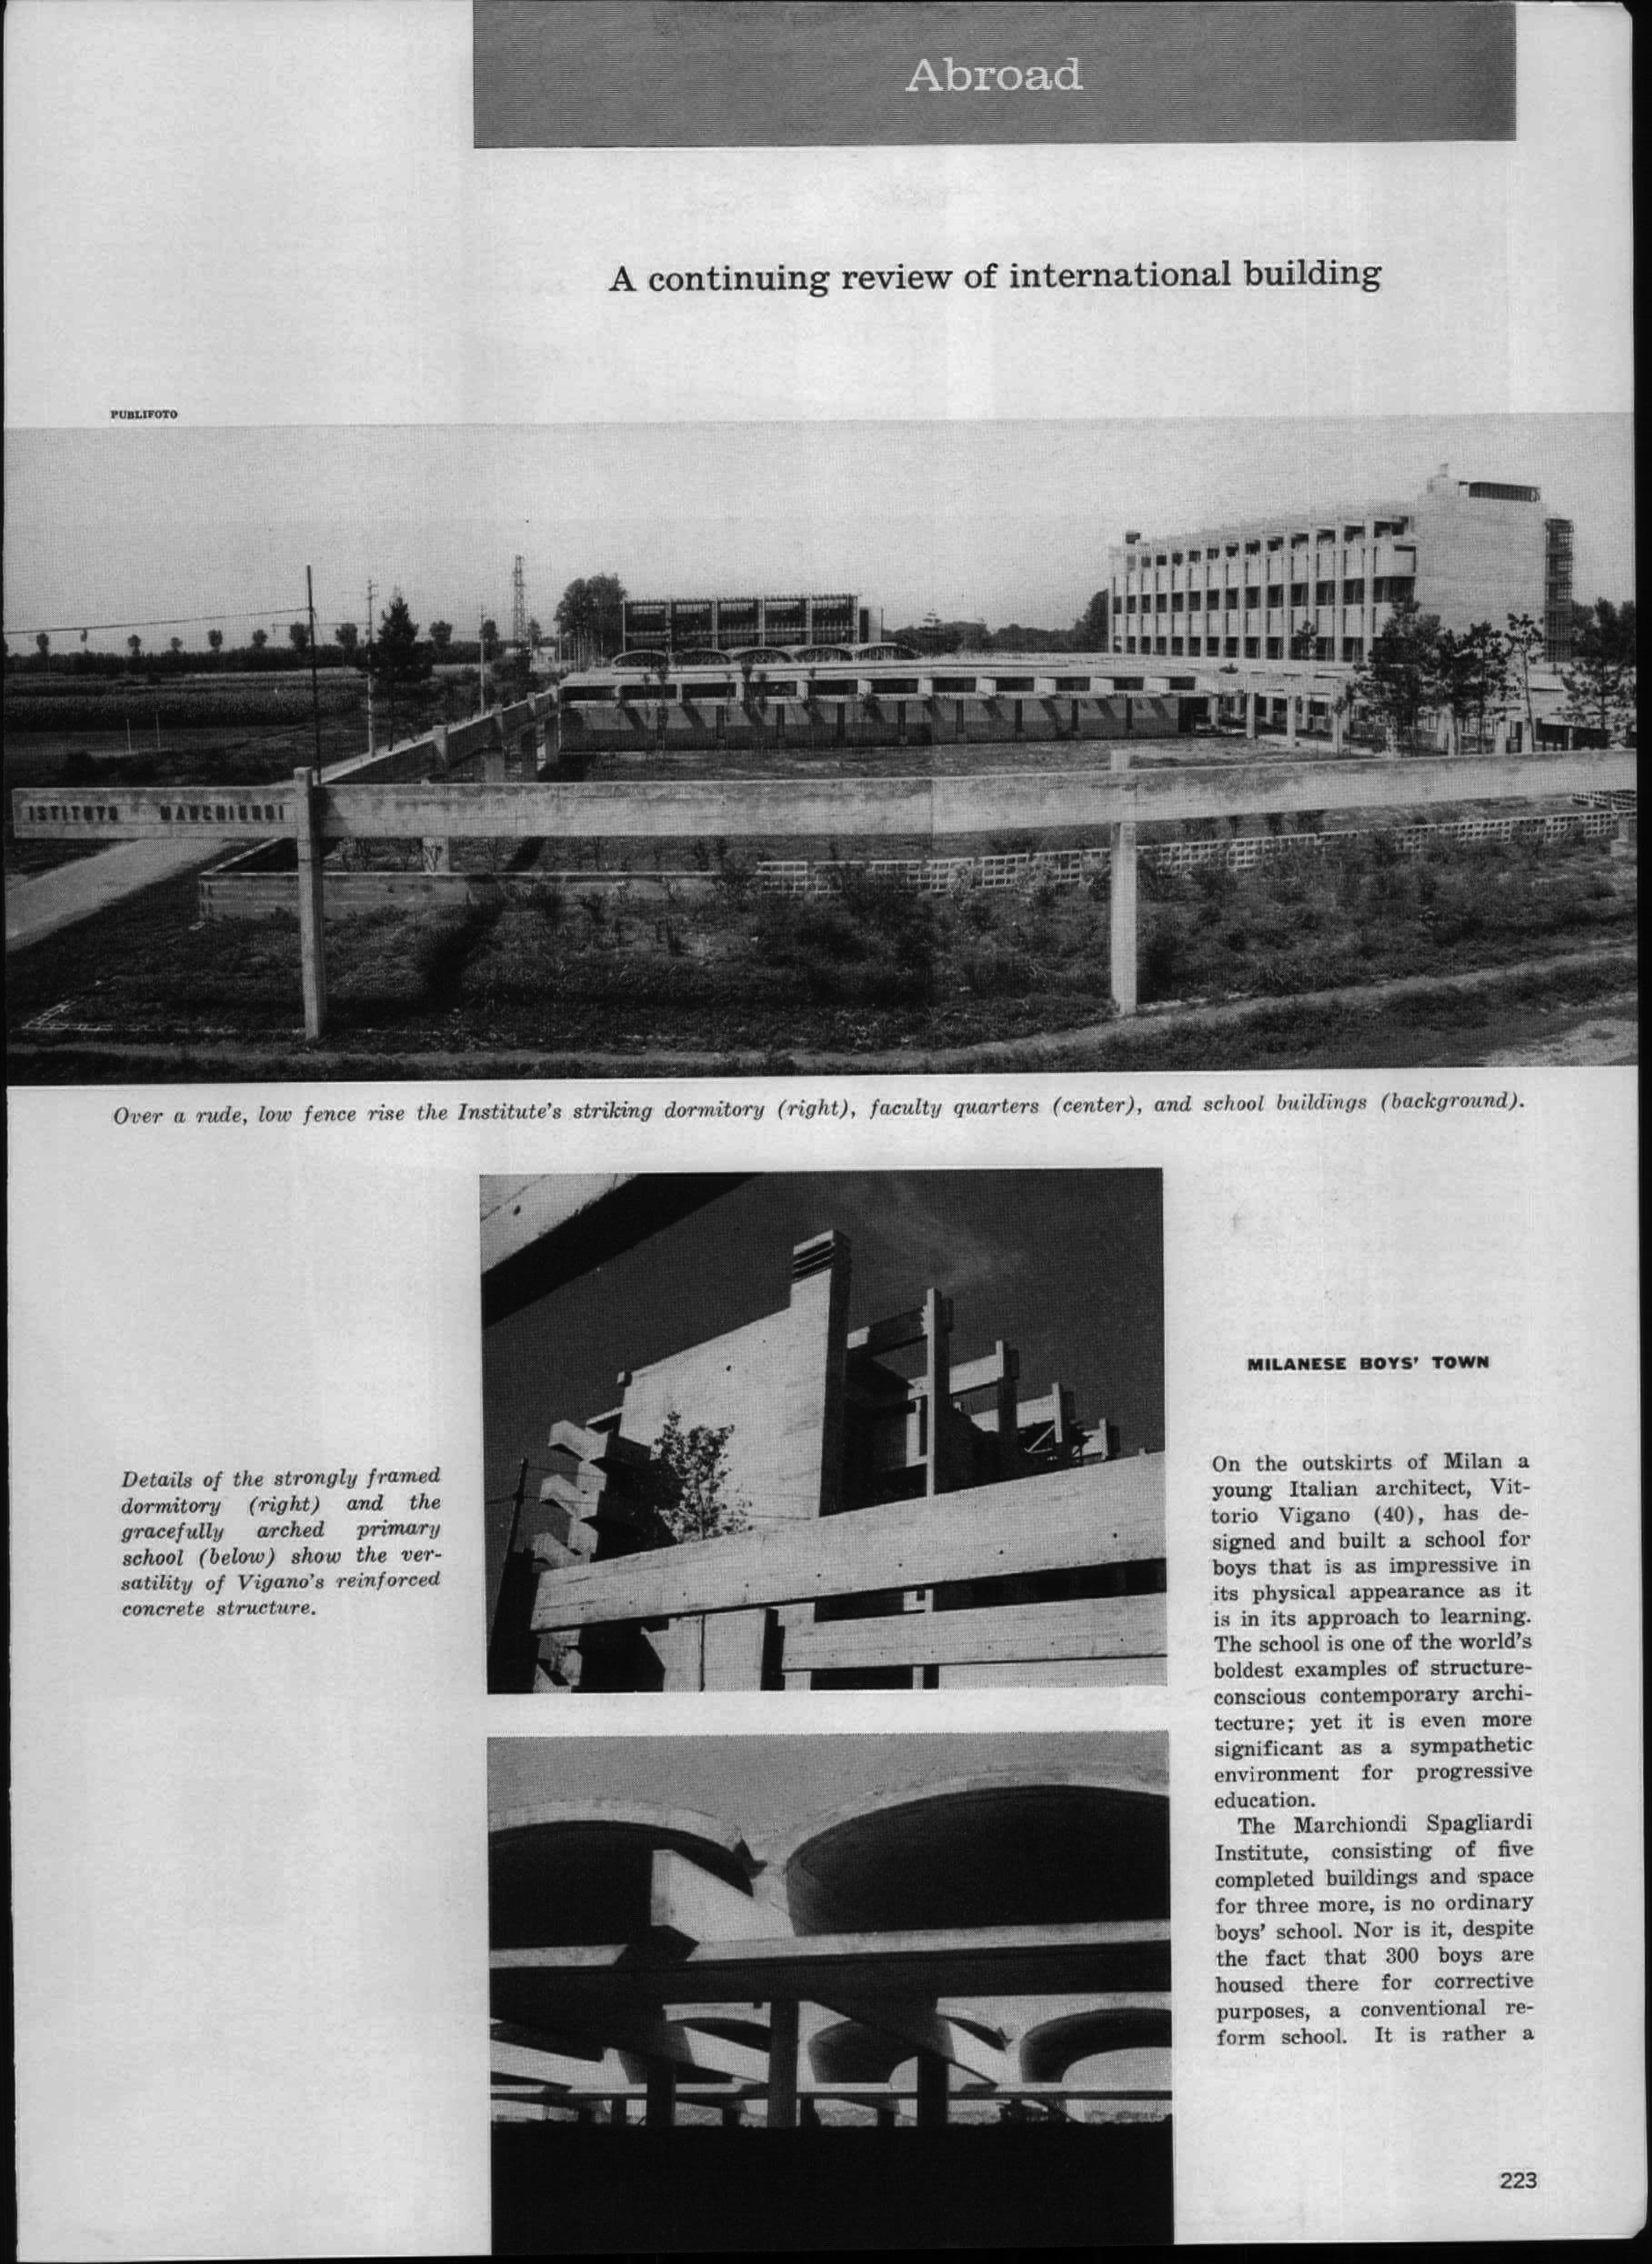 1959. “Milanese Boys' Town (Istituto Marchiondi Spagliardi by Vittoriano Viganò)”, Architectural Forum, 110, no. 3 (March): 223-225.